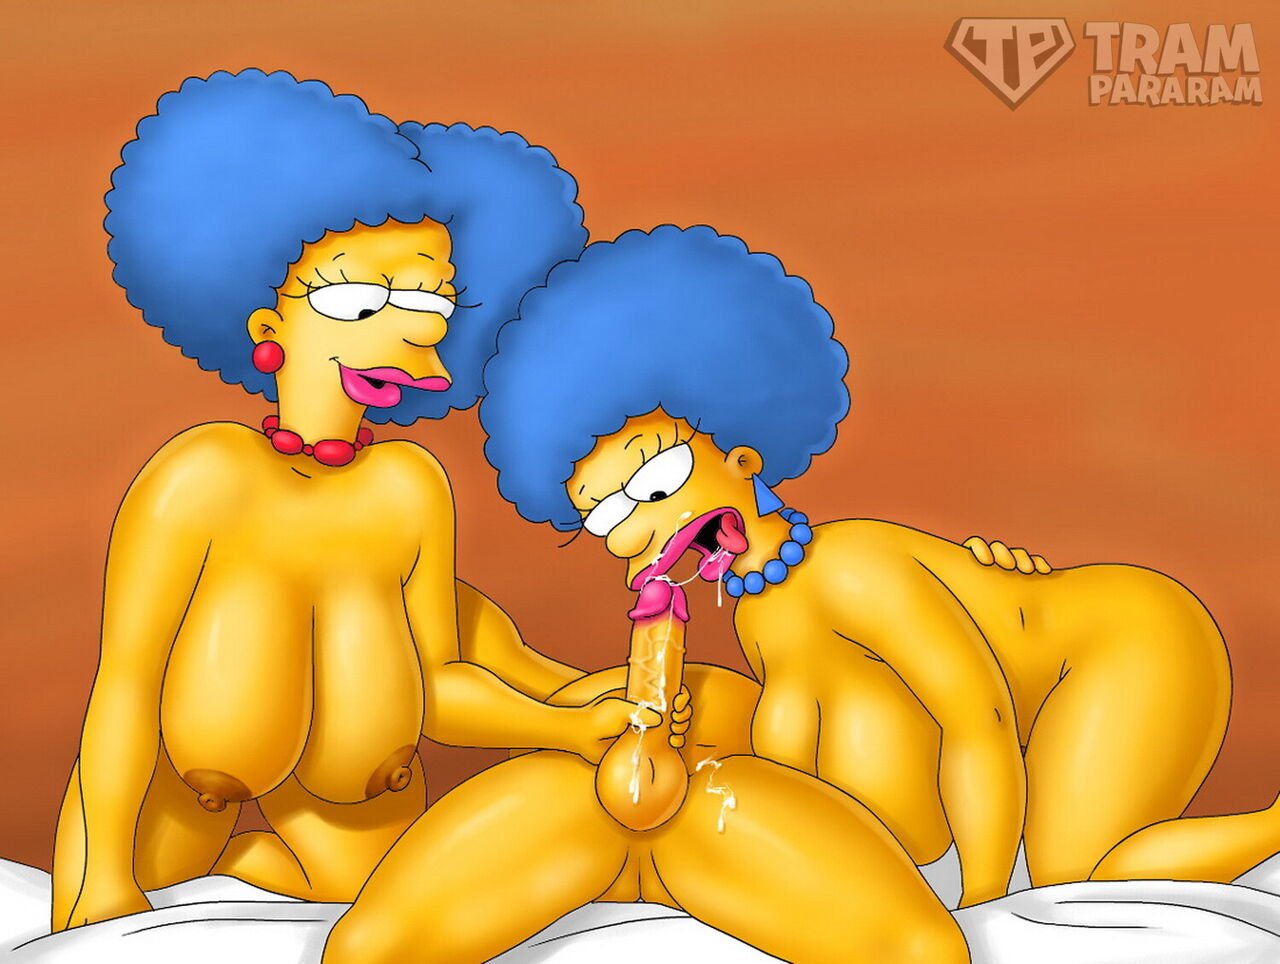 Tram Pararam Big Women Porn - Tram Pararam â€“ The Simpsons | Top Hentai Comics